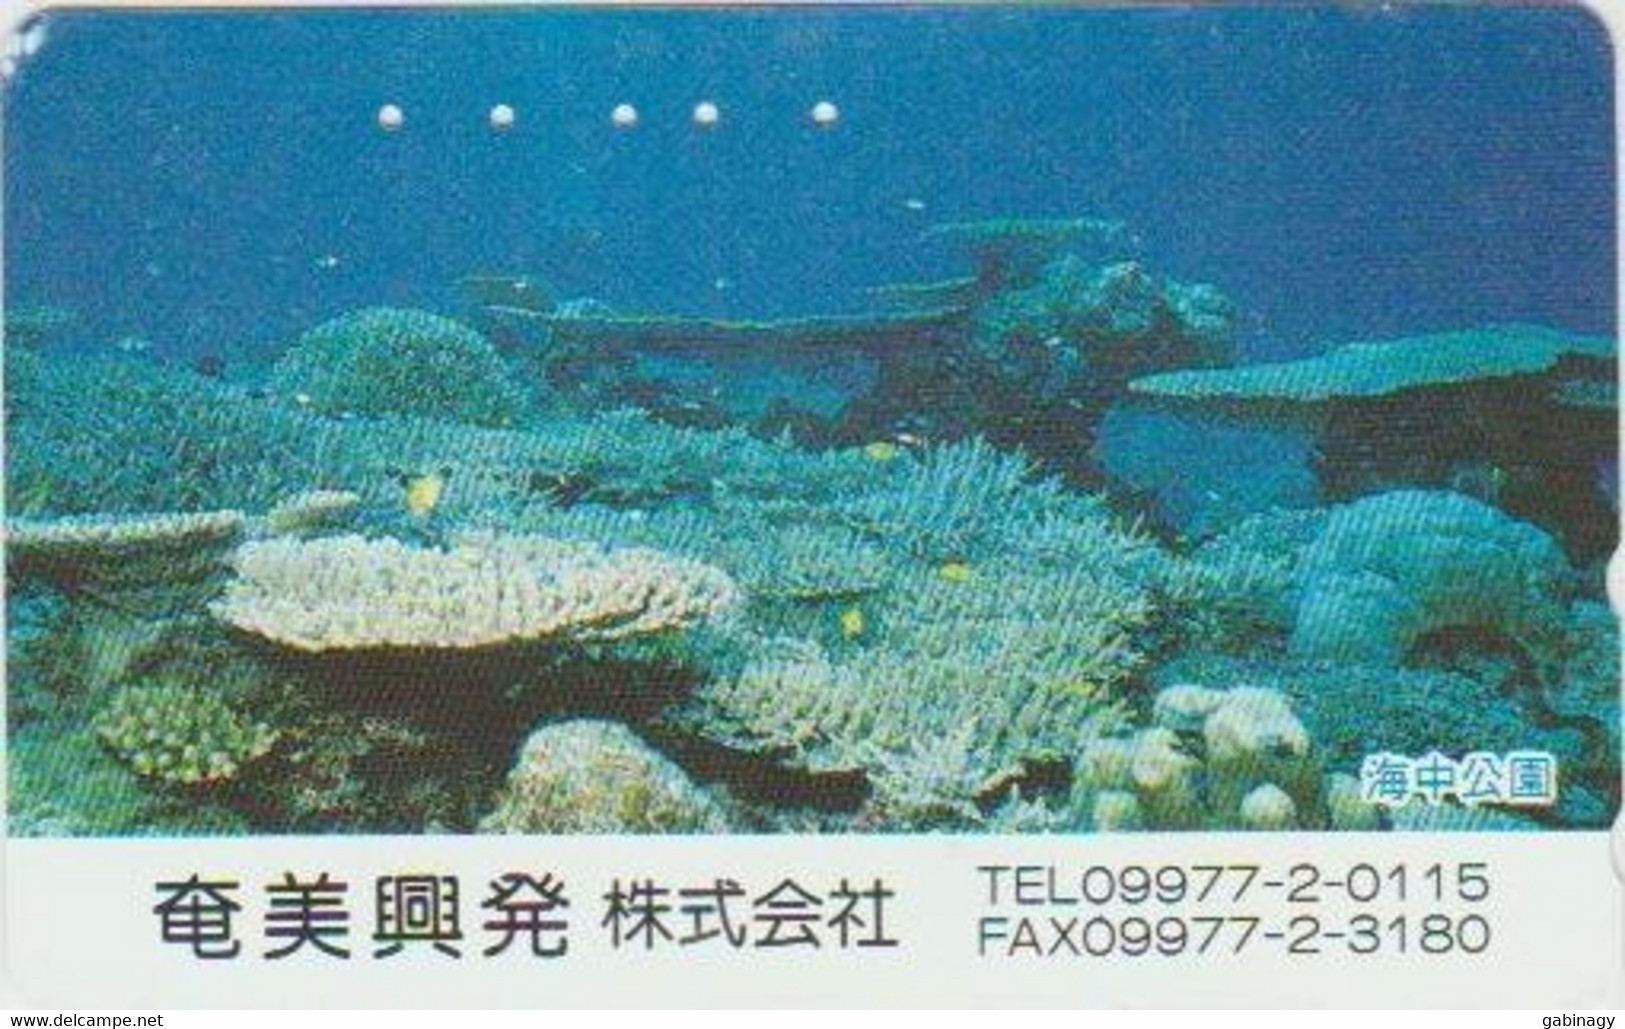 UNDERWATER LIFE - JAPAN-002 - 110-011 - Fische